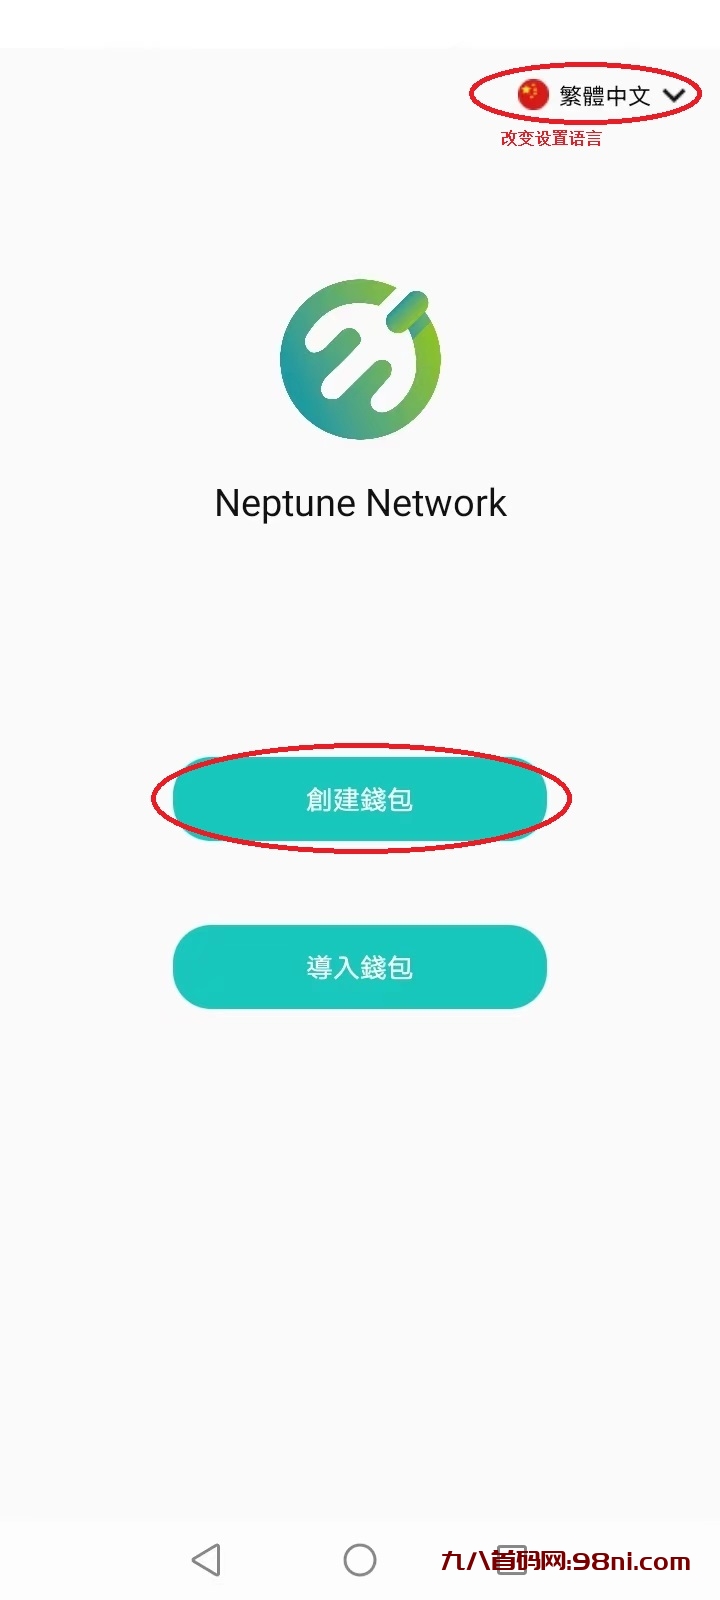 Neptune network海王星不用实铭，不看广告，注册获得5000个NT-首码网-网上创业赚钱首码项目发布推广平台